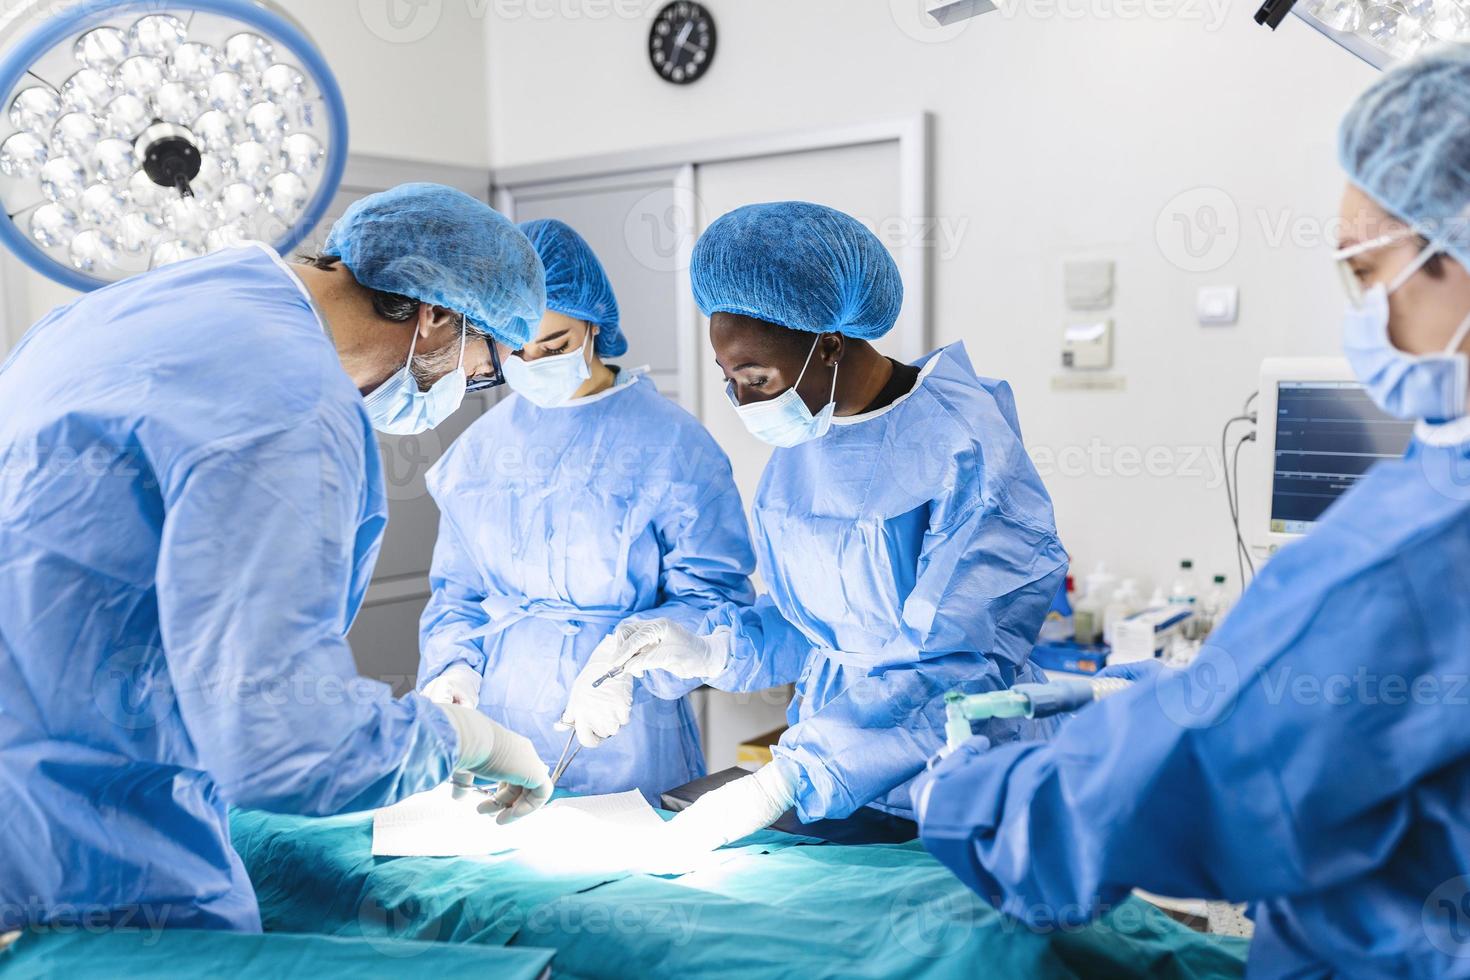 equipe cirúrgica realizando cirurgia no teatro de operação moderno, equipe de médicos concentrando-se em um paciente durante uma cirurgia, equipe de médicos trabalhando juntos durante uma cirurgia na sala de cirurgia, foto